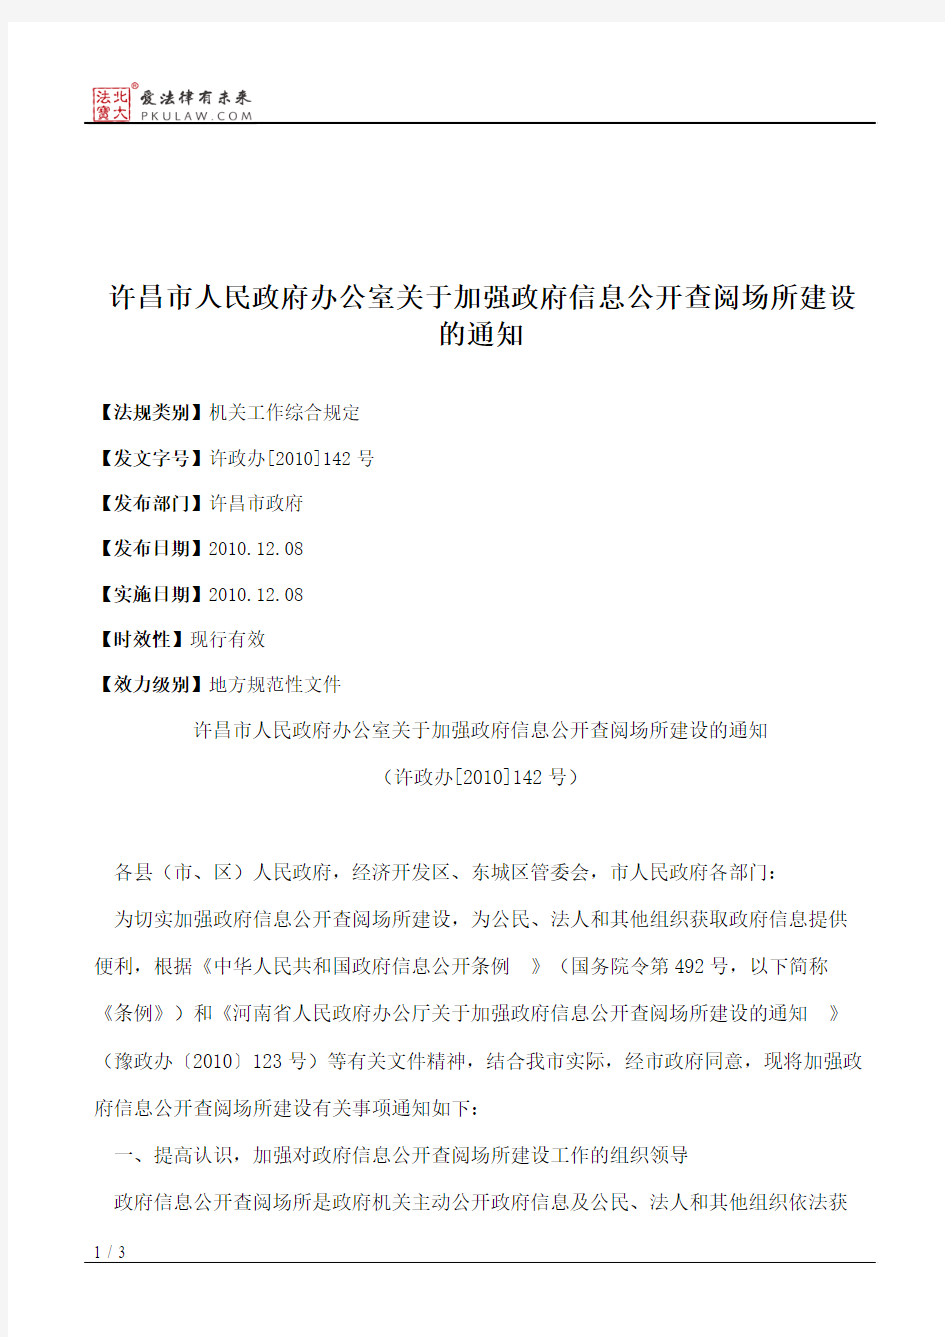 许昌市人民政府办公室关于加强政府信息公开查阅场所建设的通知